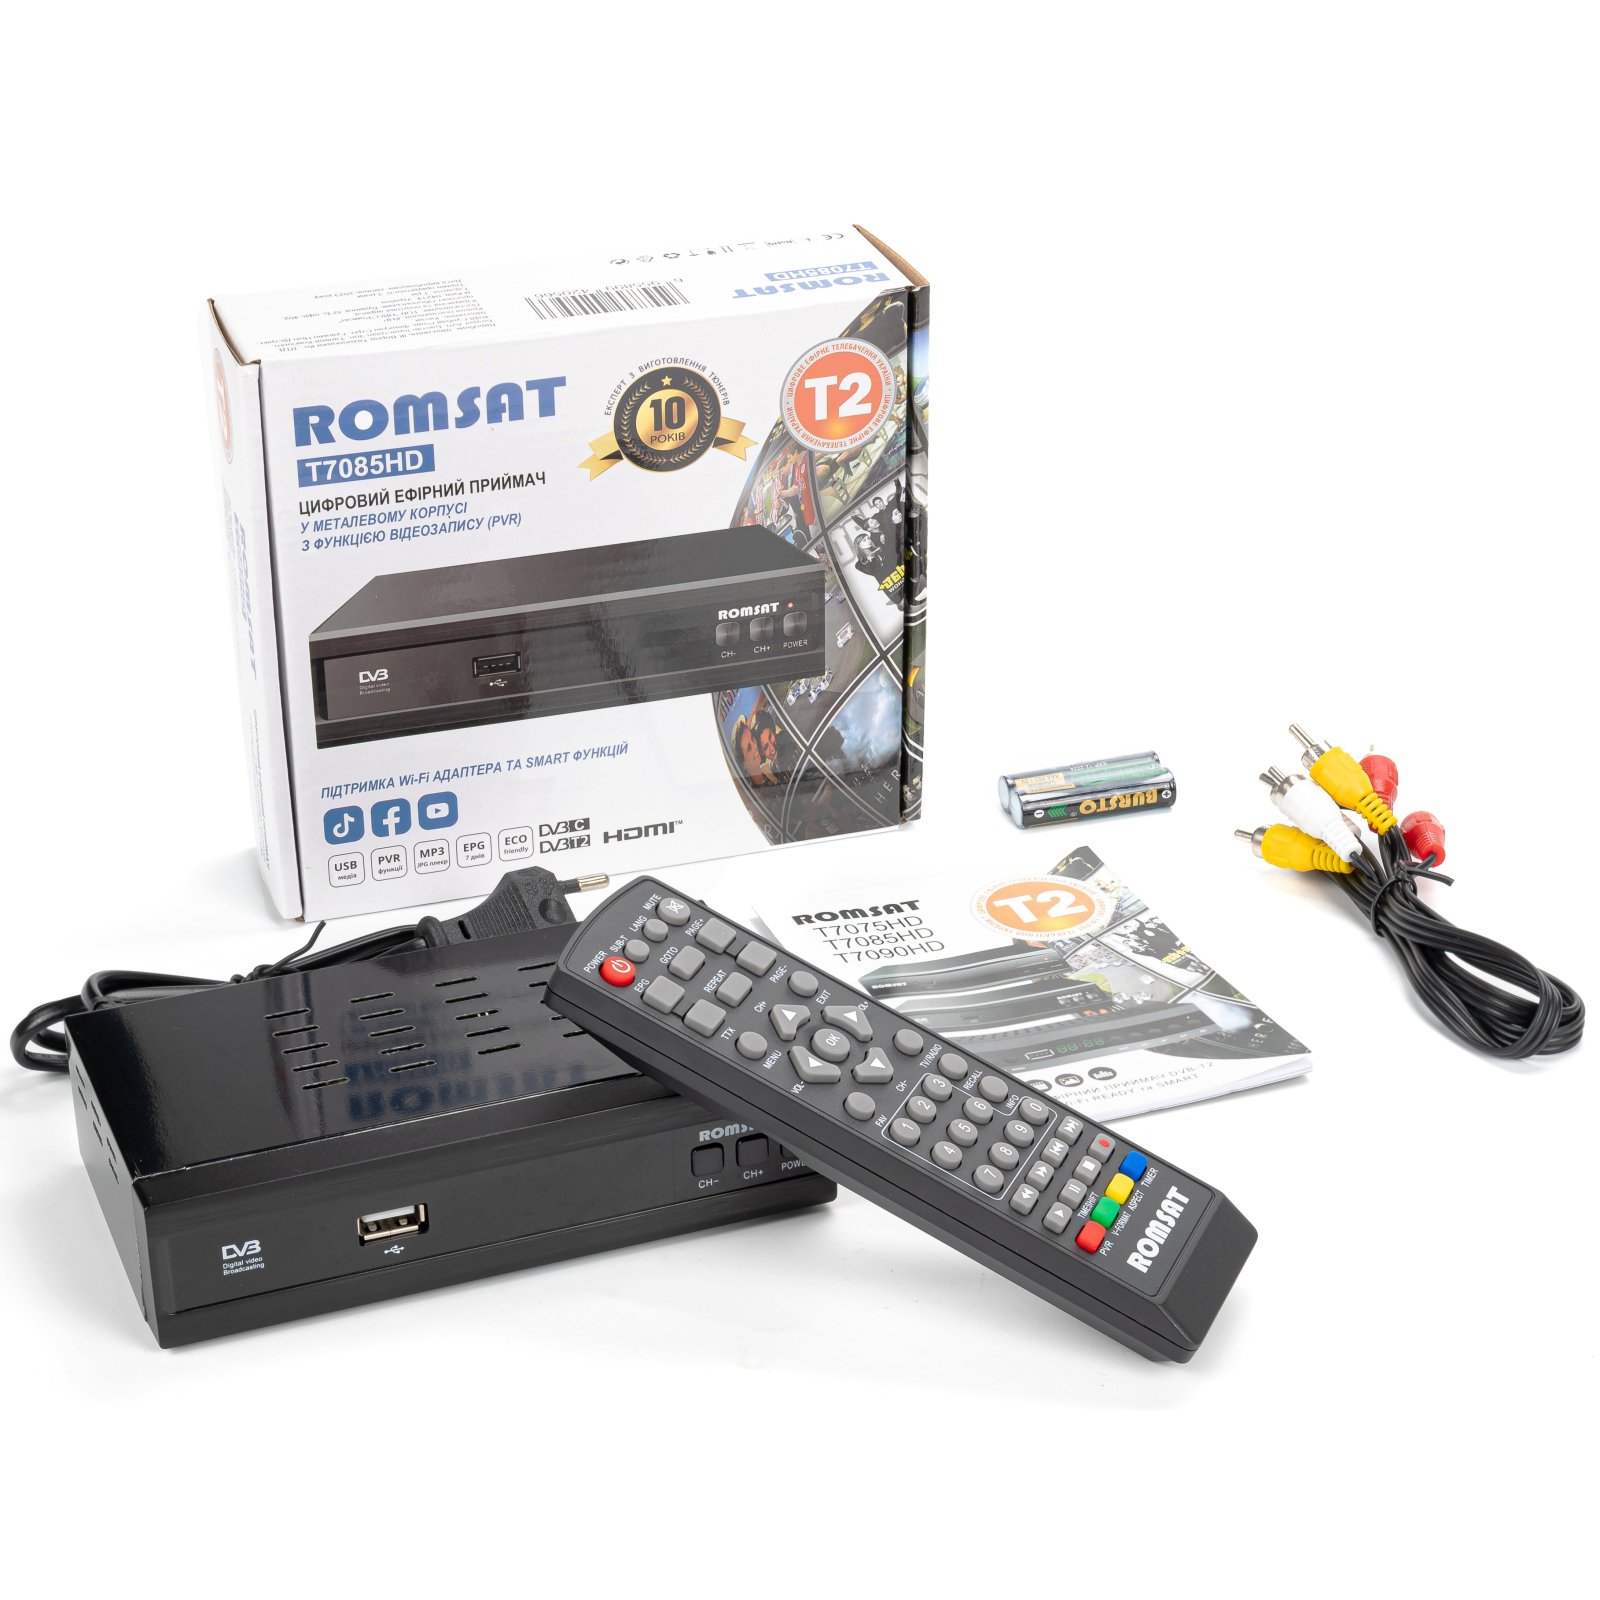 ТВ тюнер Romsat DVB-T2 (T7085HD) зображення 7